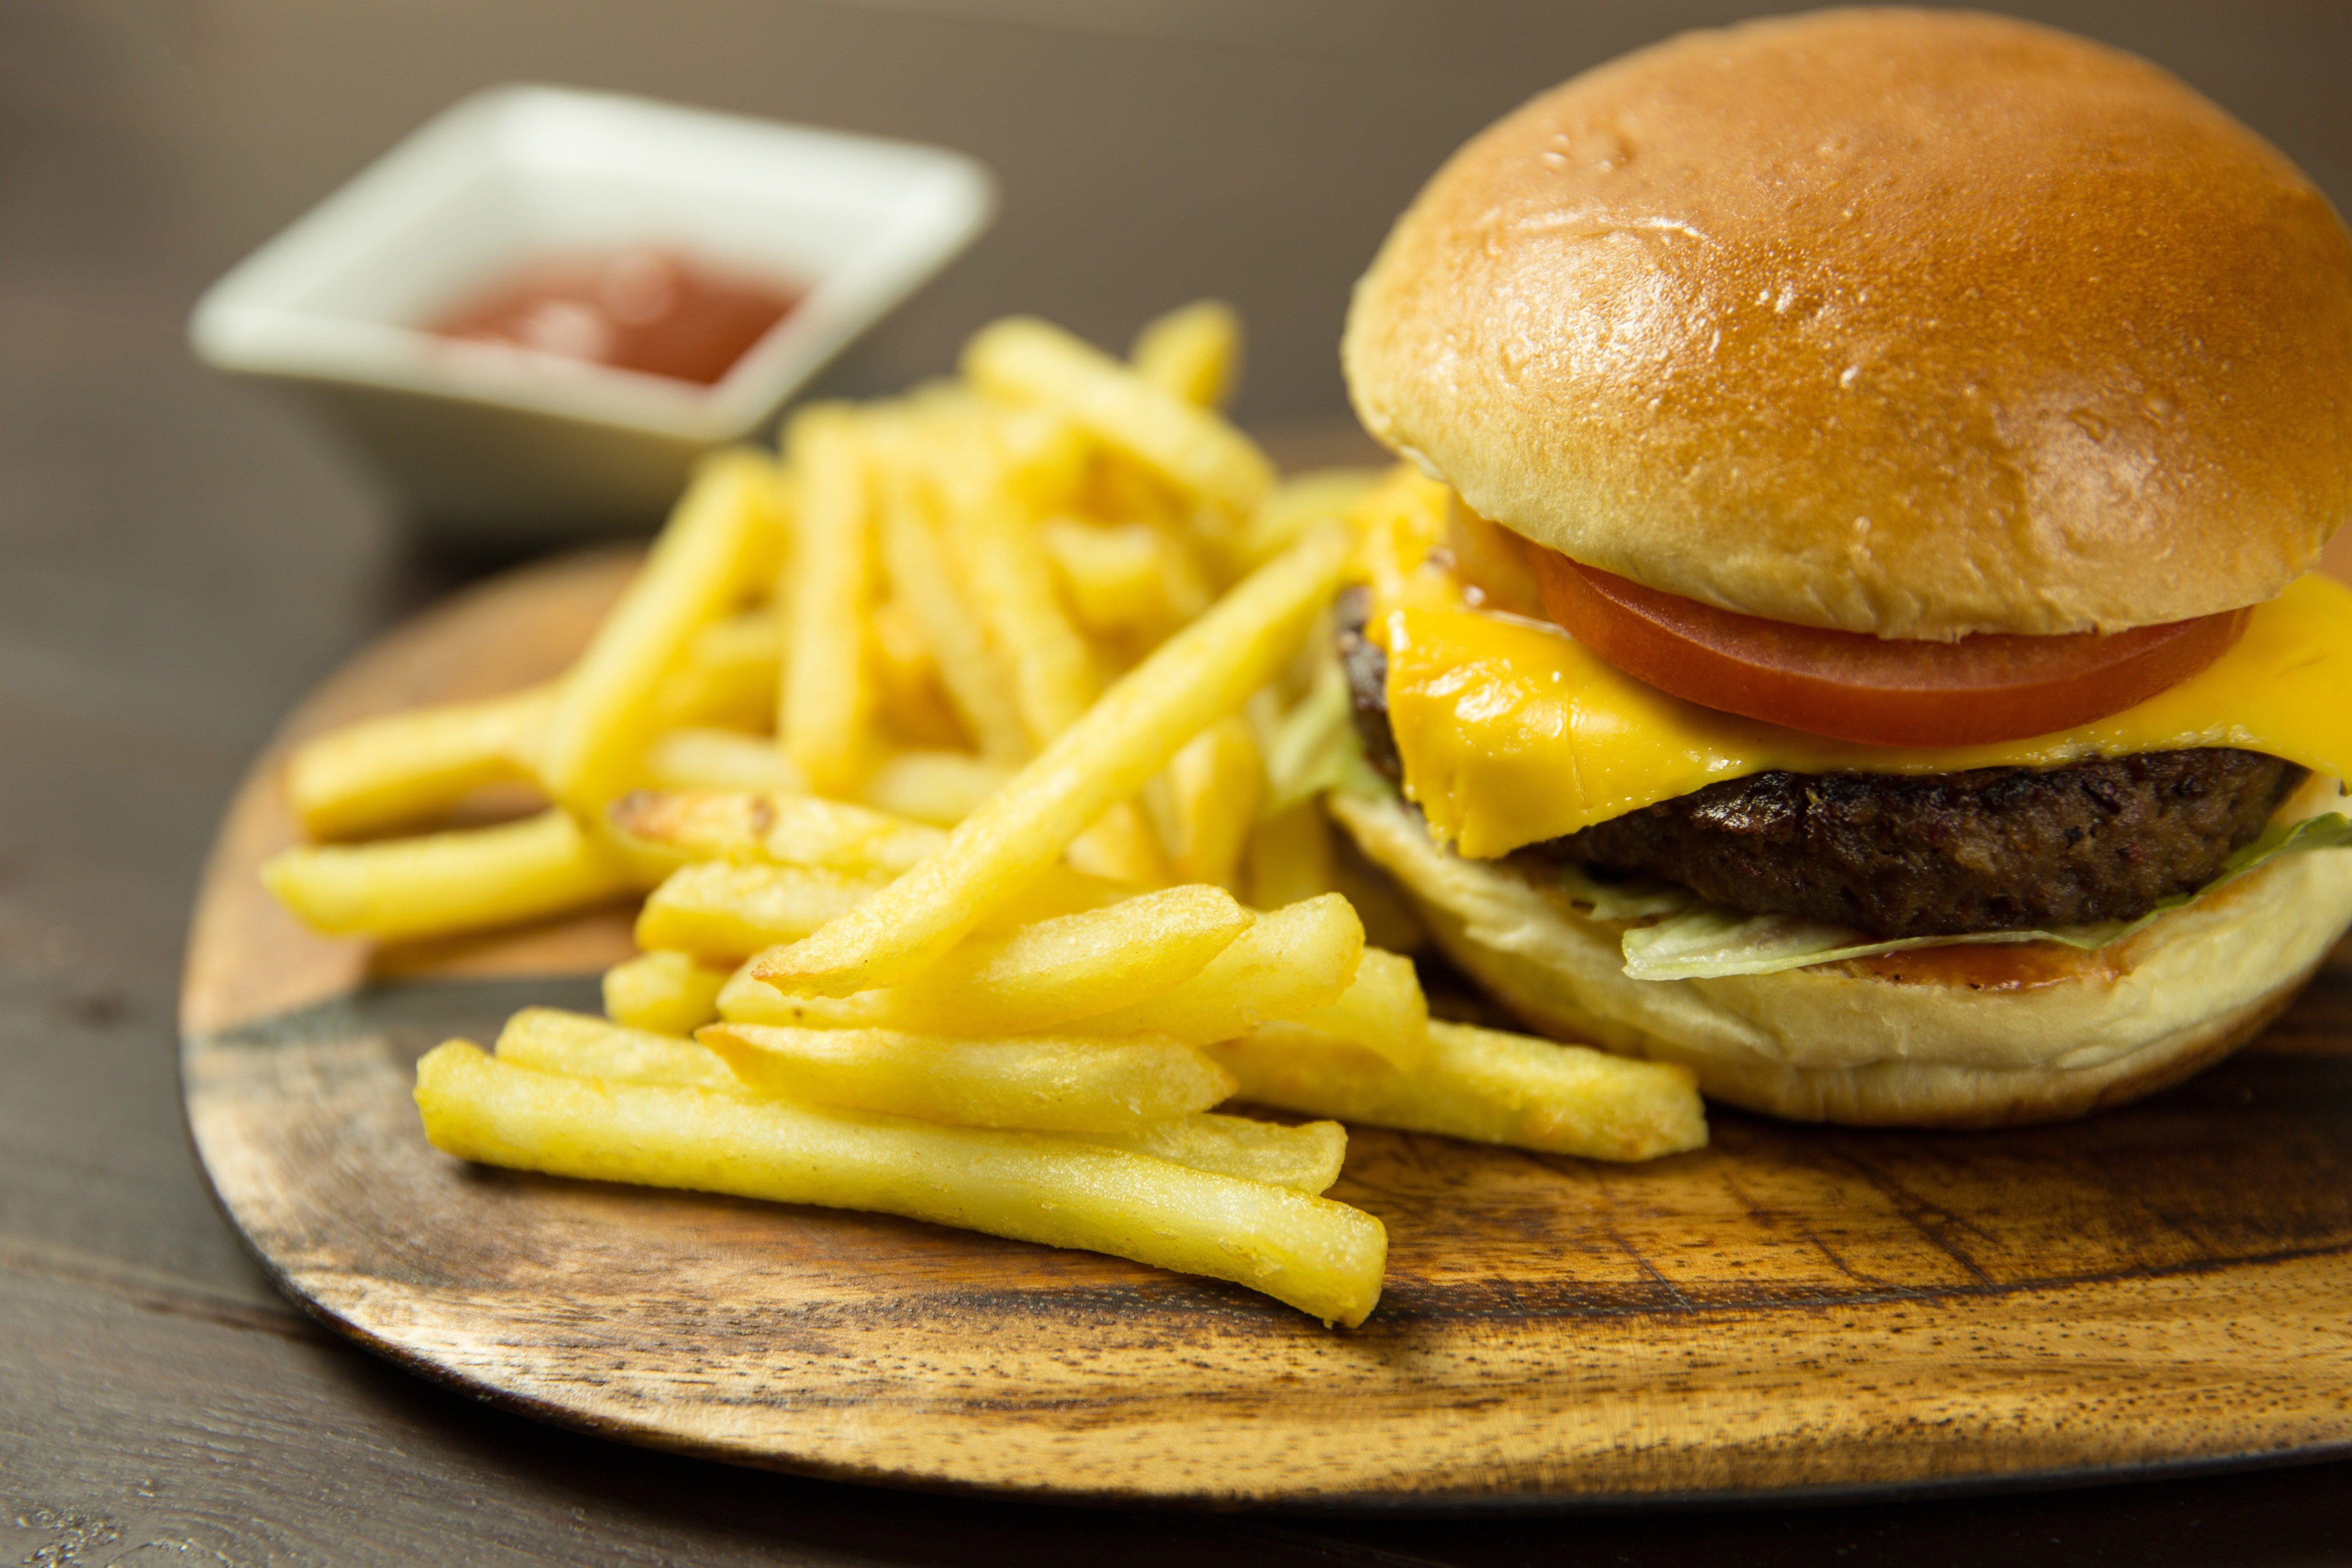 Adam aß eine ganze Woche lang Fast Food, was seinen Magen schmerzte. | Quelle: Pexels